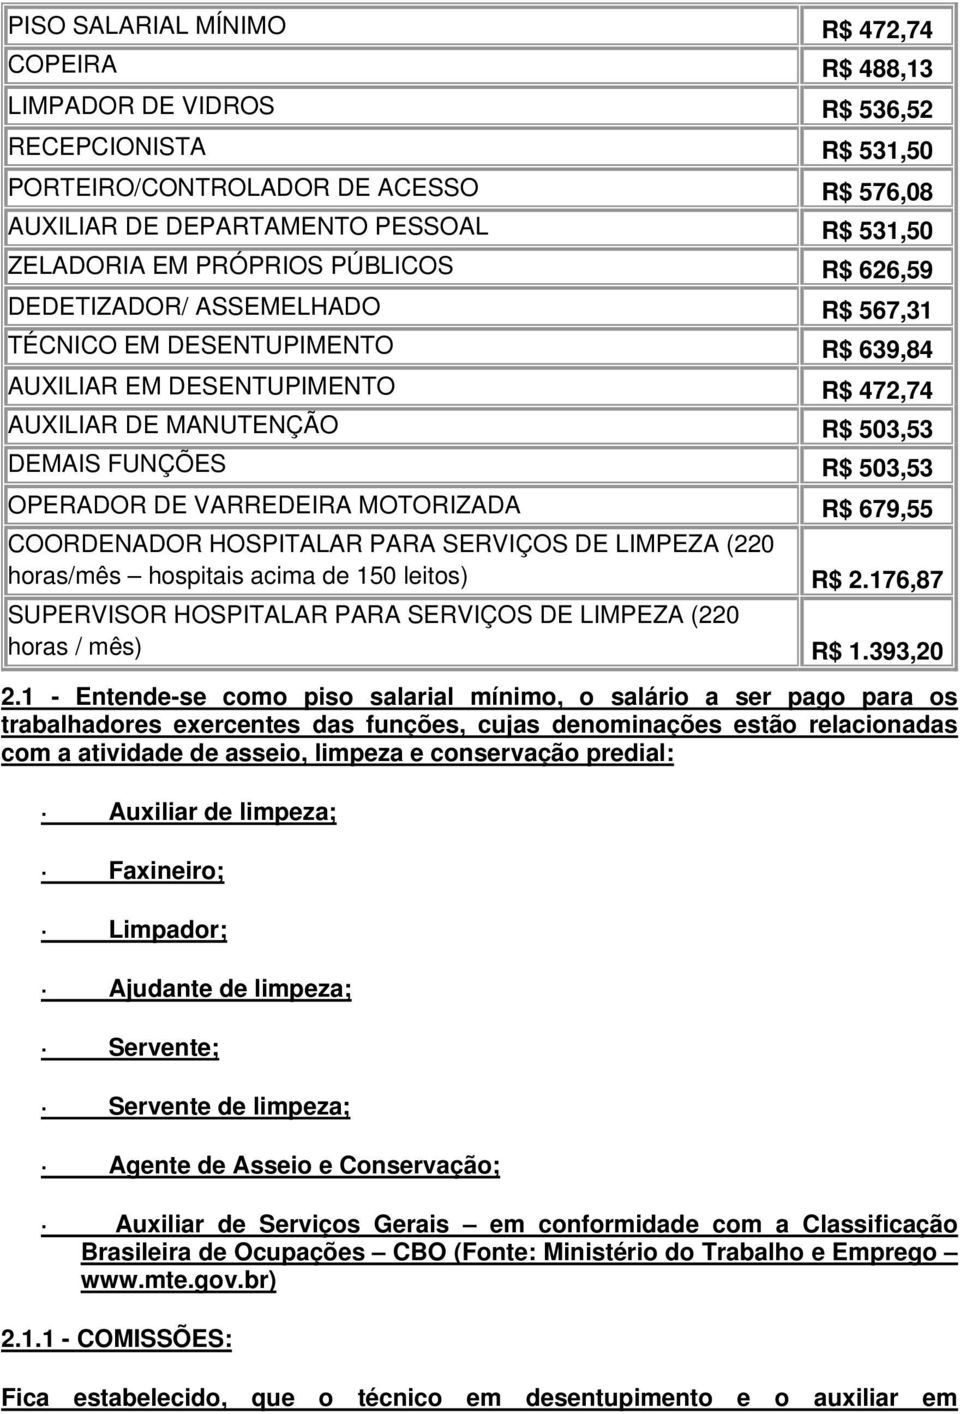 OPERADOR DE VARREDEIRA MOTORIZADA R$ 679,55 COORDENADOR HOSPITALAR PARA SERVIÇOS DE LIMPEZA (220 horas/mês hospitais acima de 150 leitos) R$ 2.